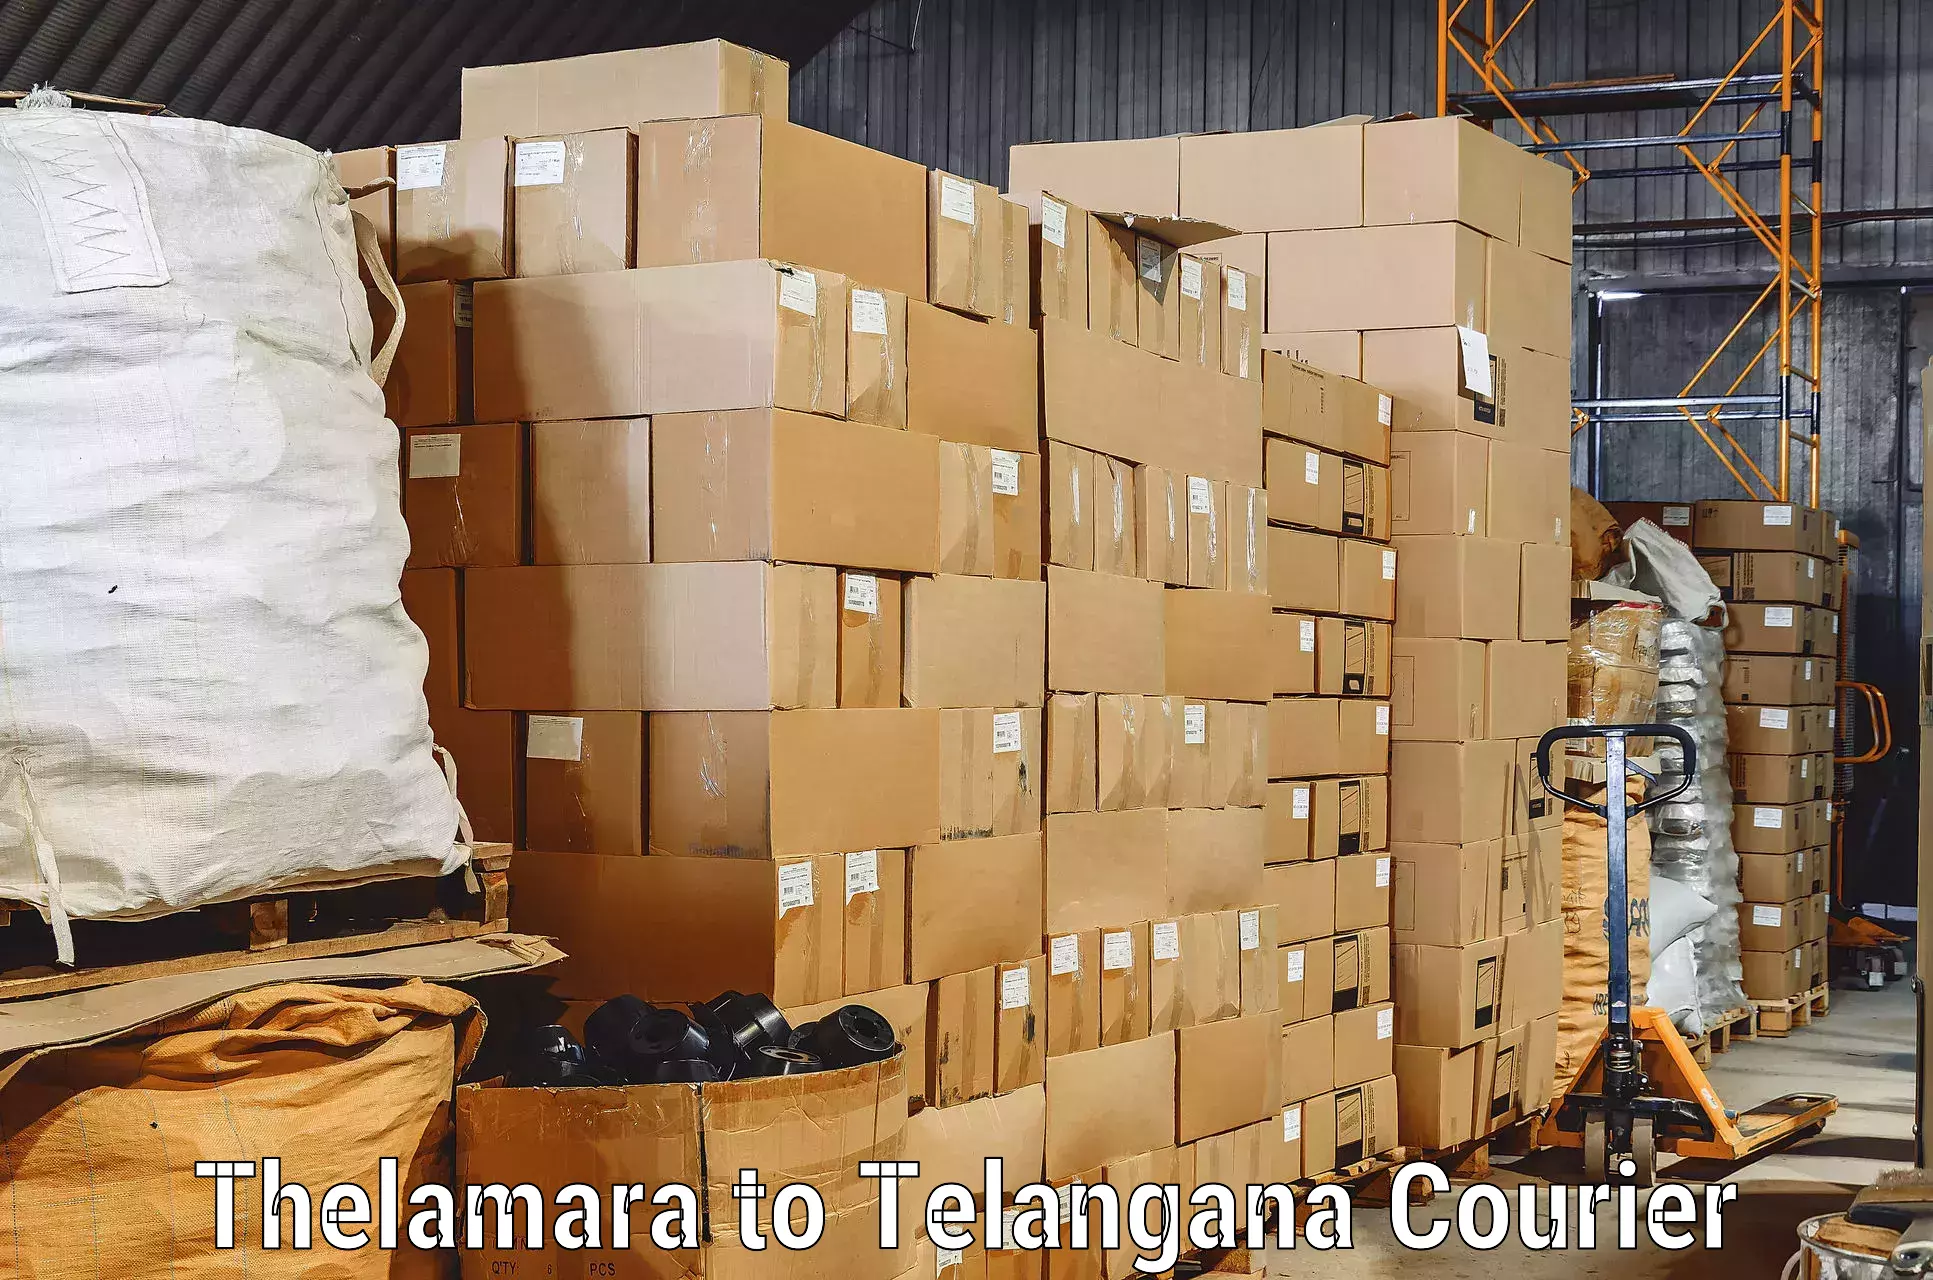 Furniture transport experts in Thelamara to Ghatkesar